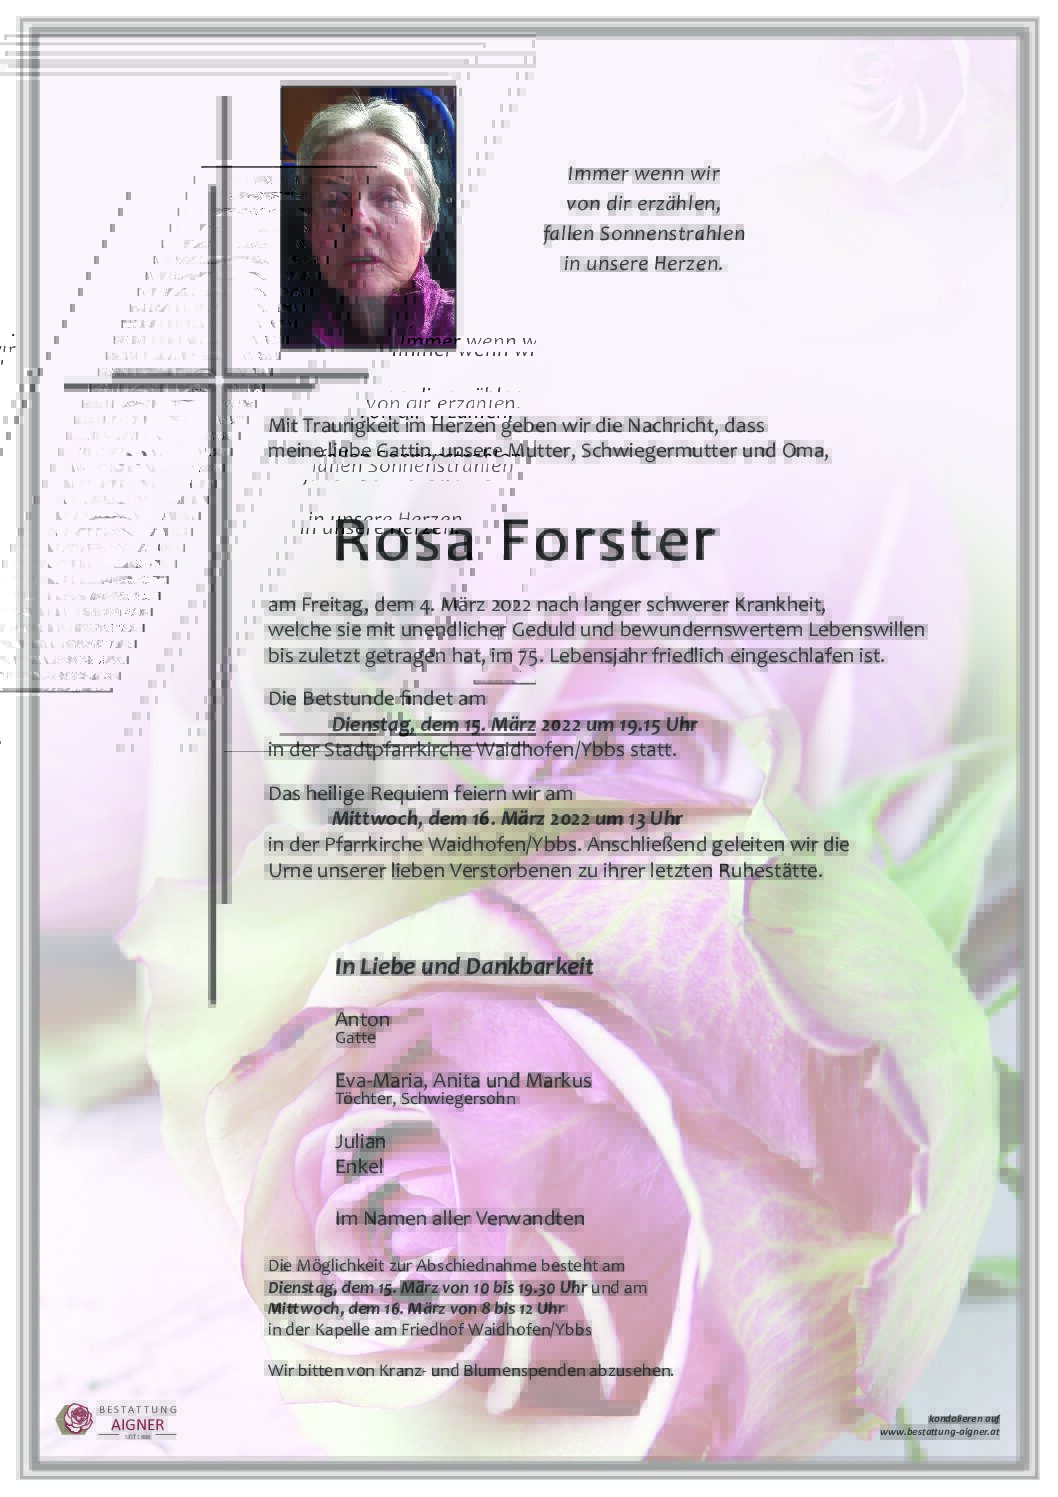 Rosa Forster